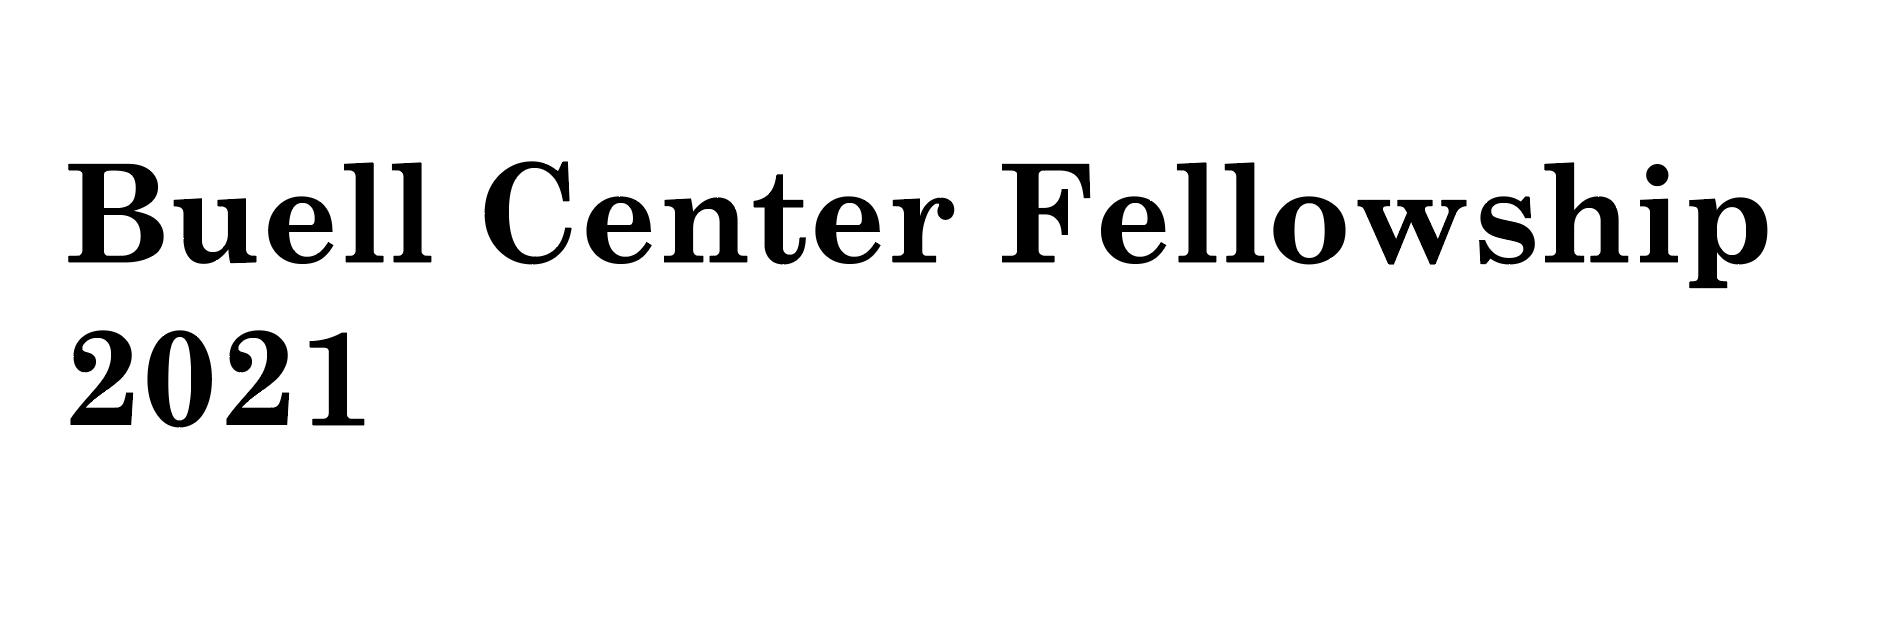 2021 Buell Center Fellowship